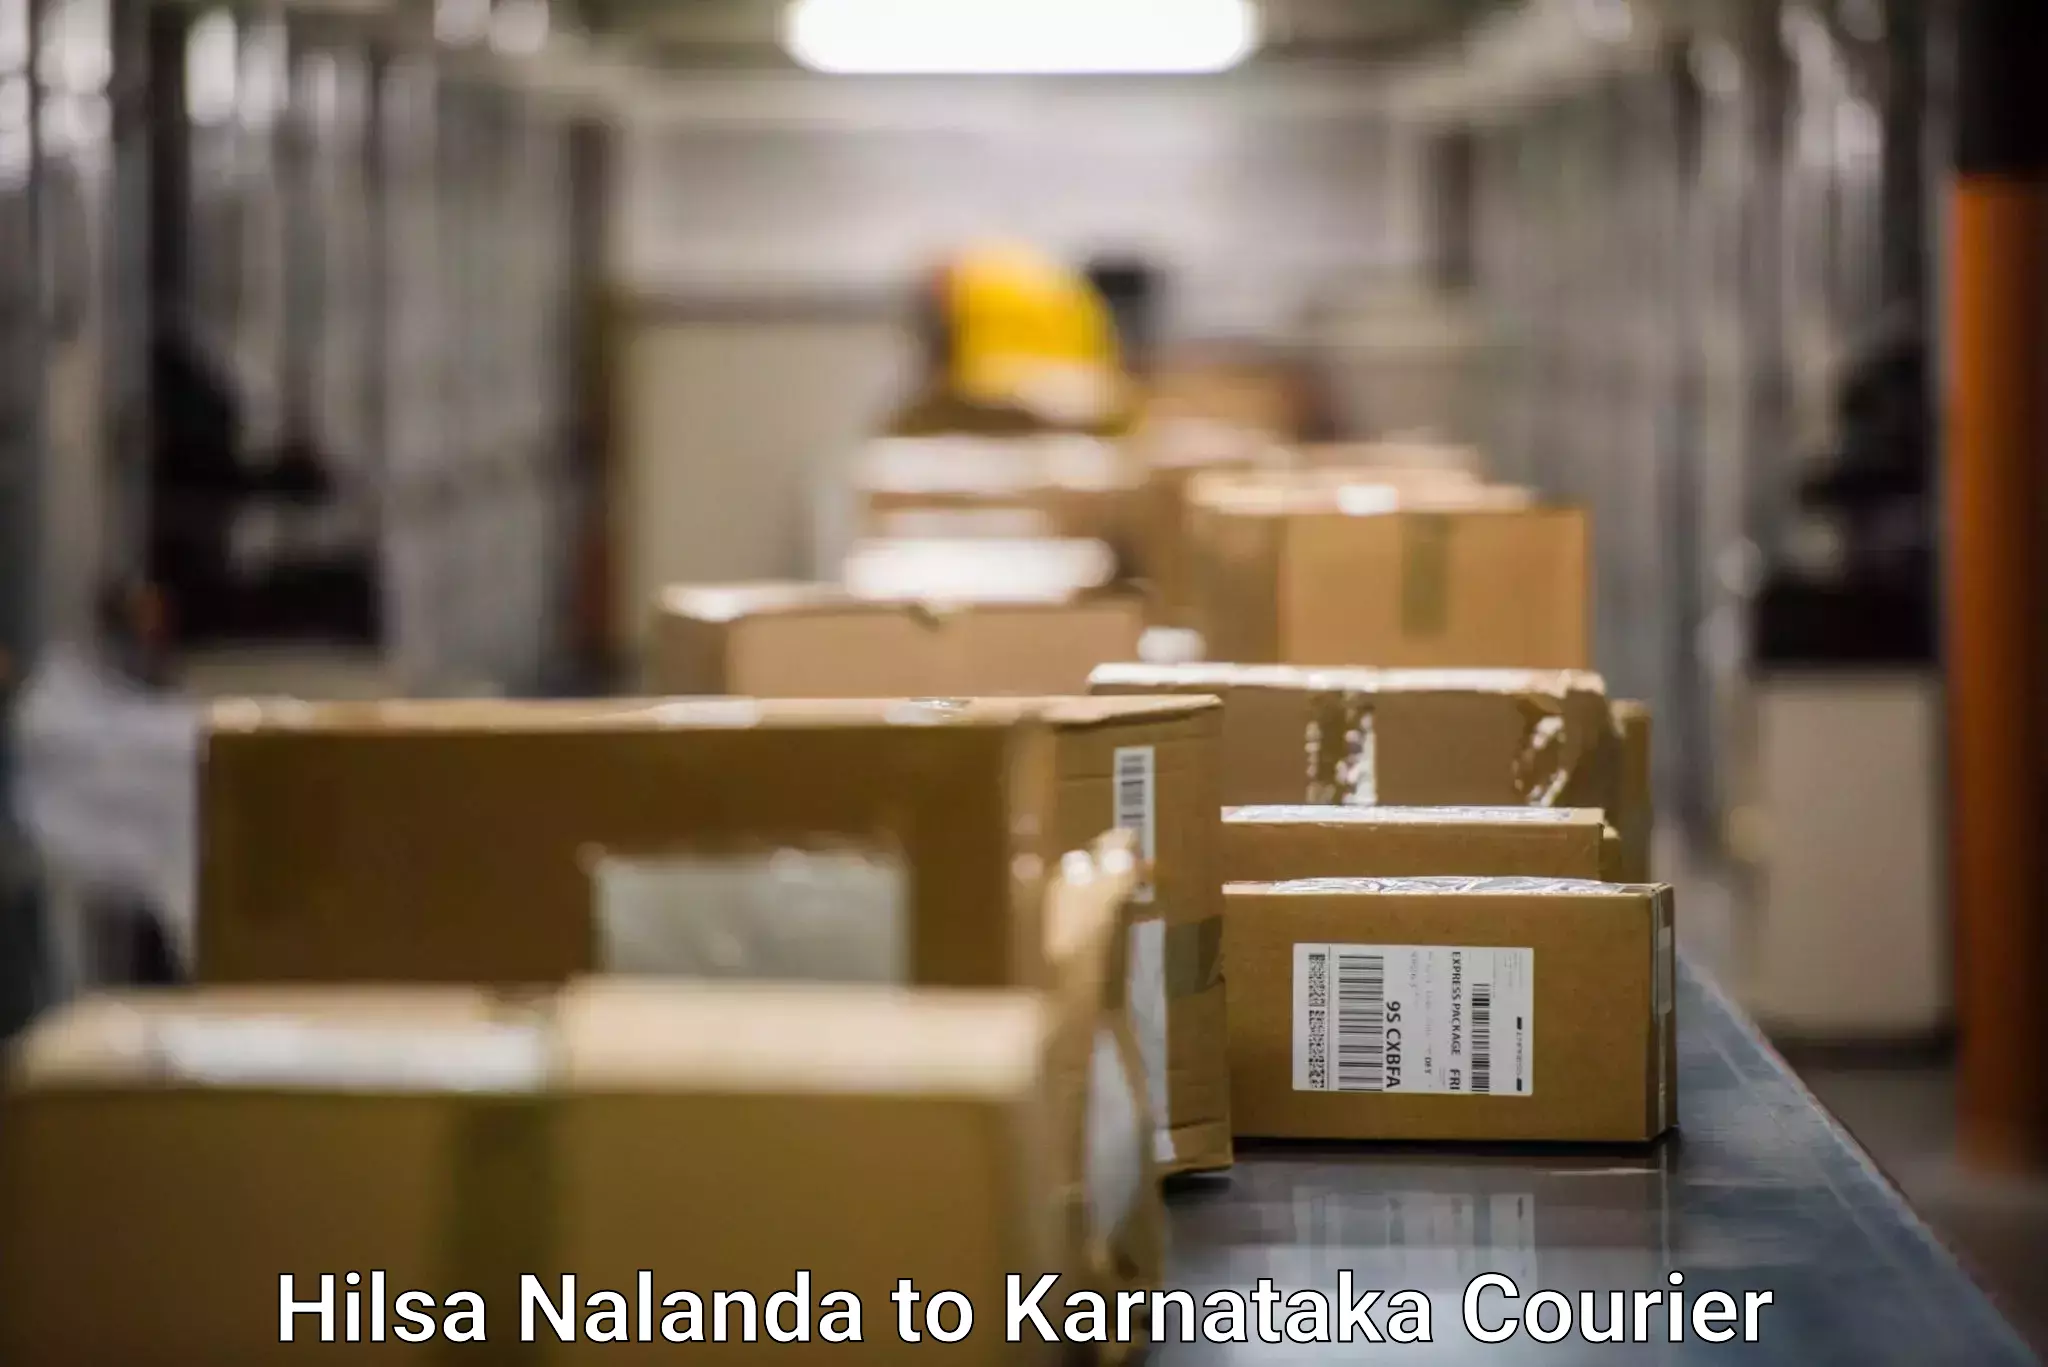 Global shipping solutions Hilsa Nalanda to Yelburga